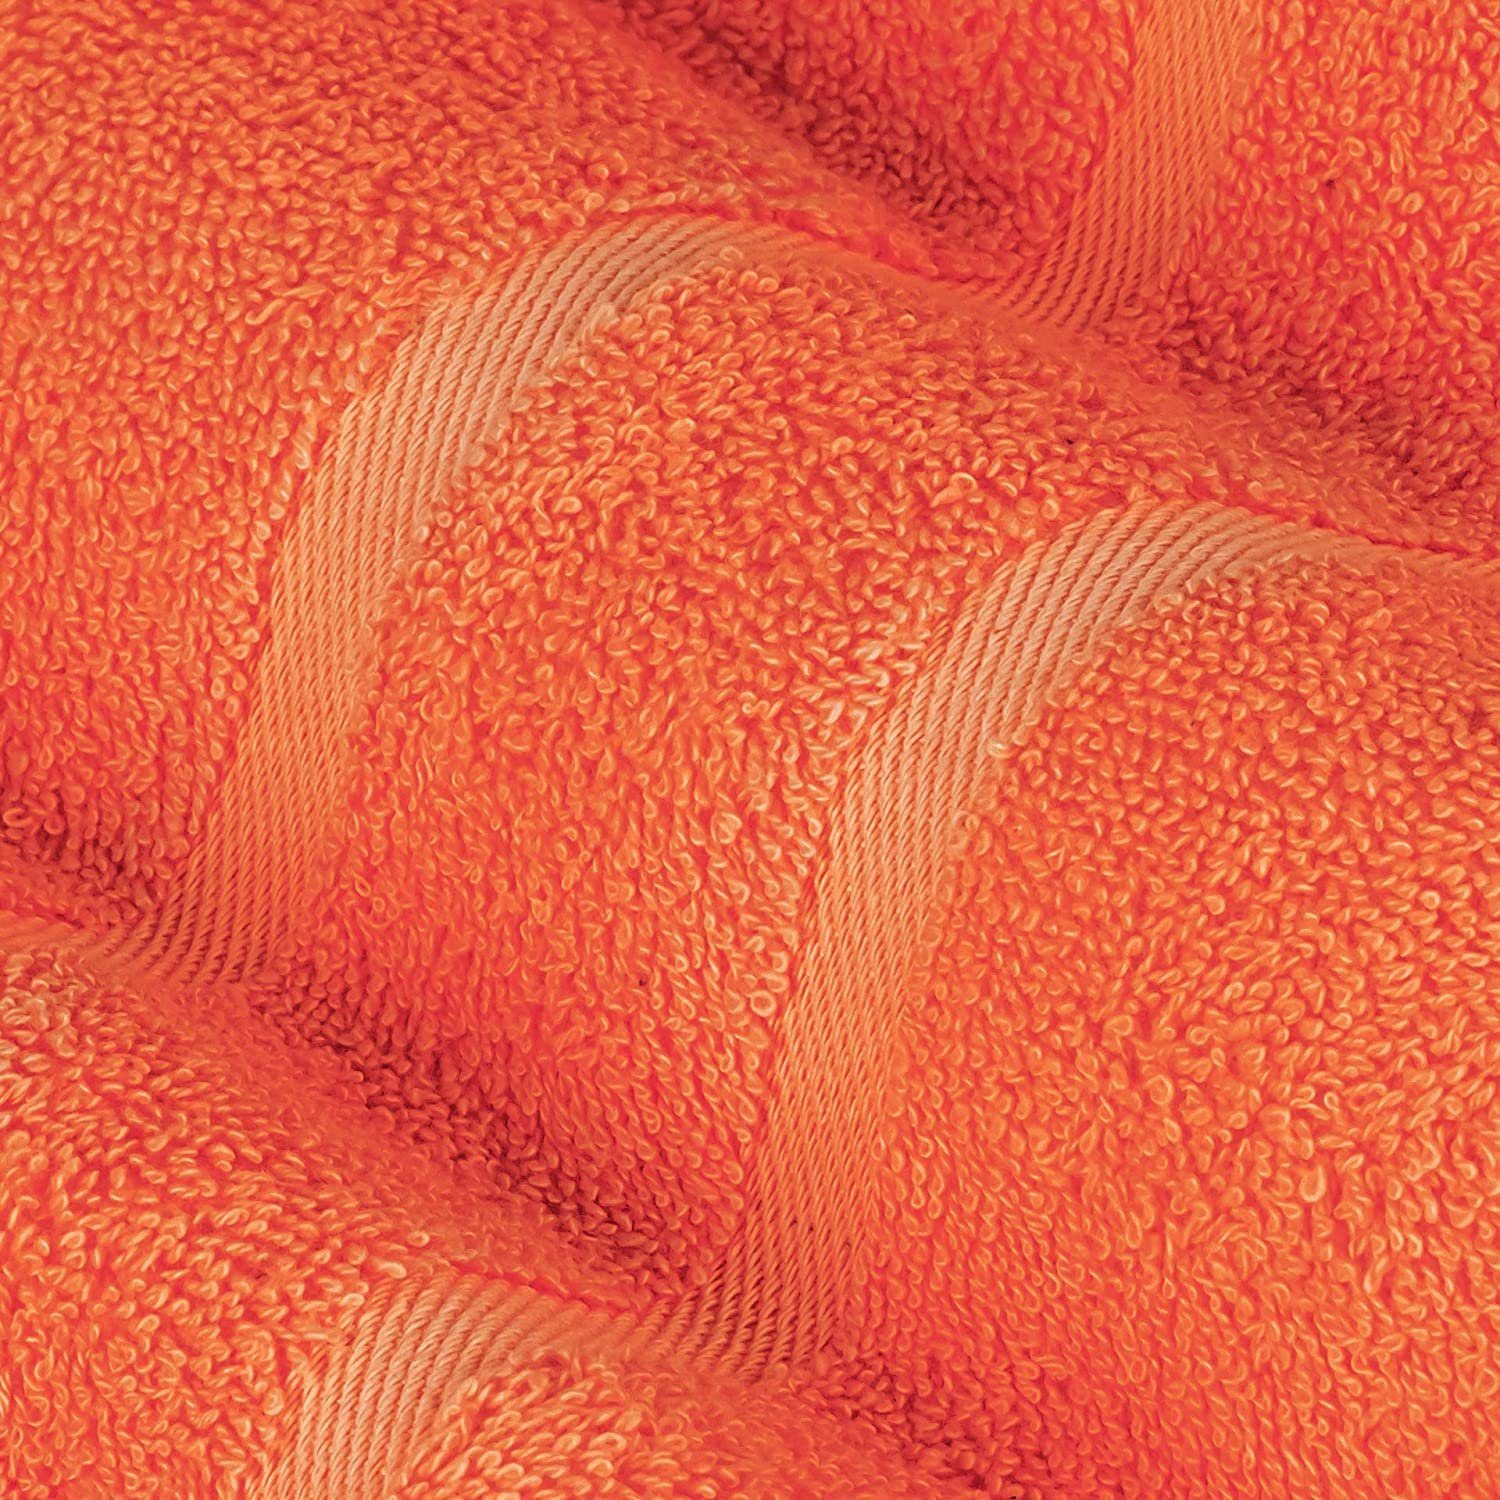 Handtuch Set Handtuch Premium Baumwolle (2 Frottee 100% 100% cm aus 500GSM in Baumwolle 2er Stück), StickandShine Frottee Orange 50x100 500g/m²